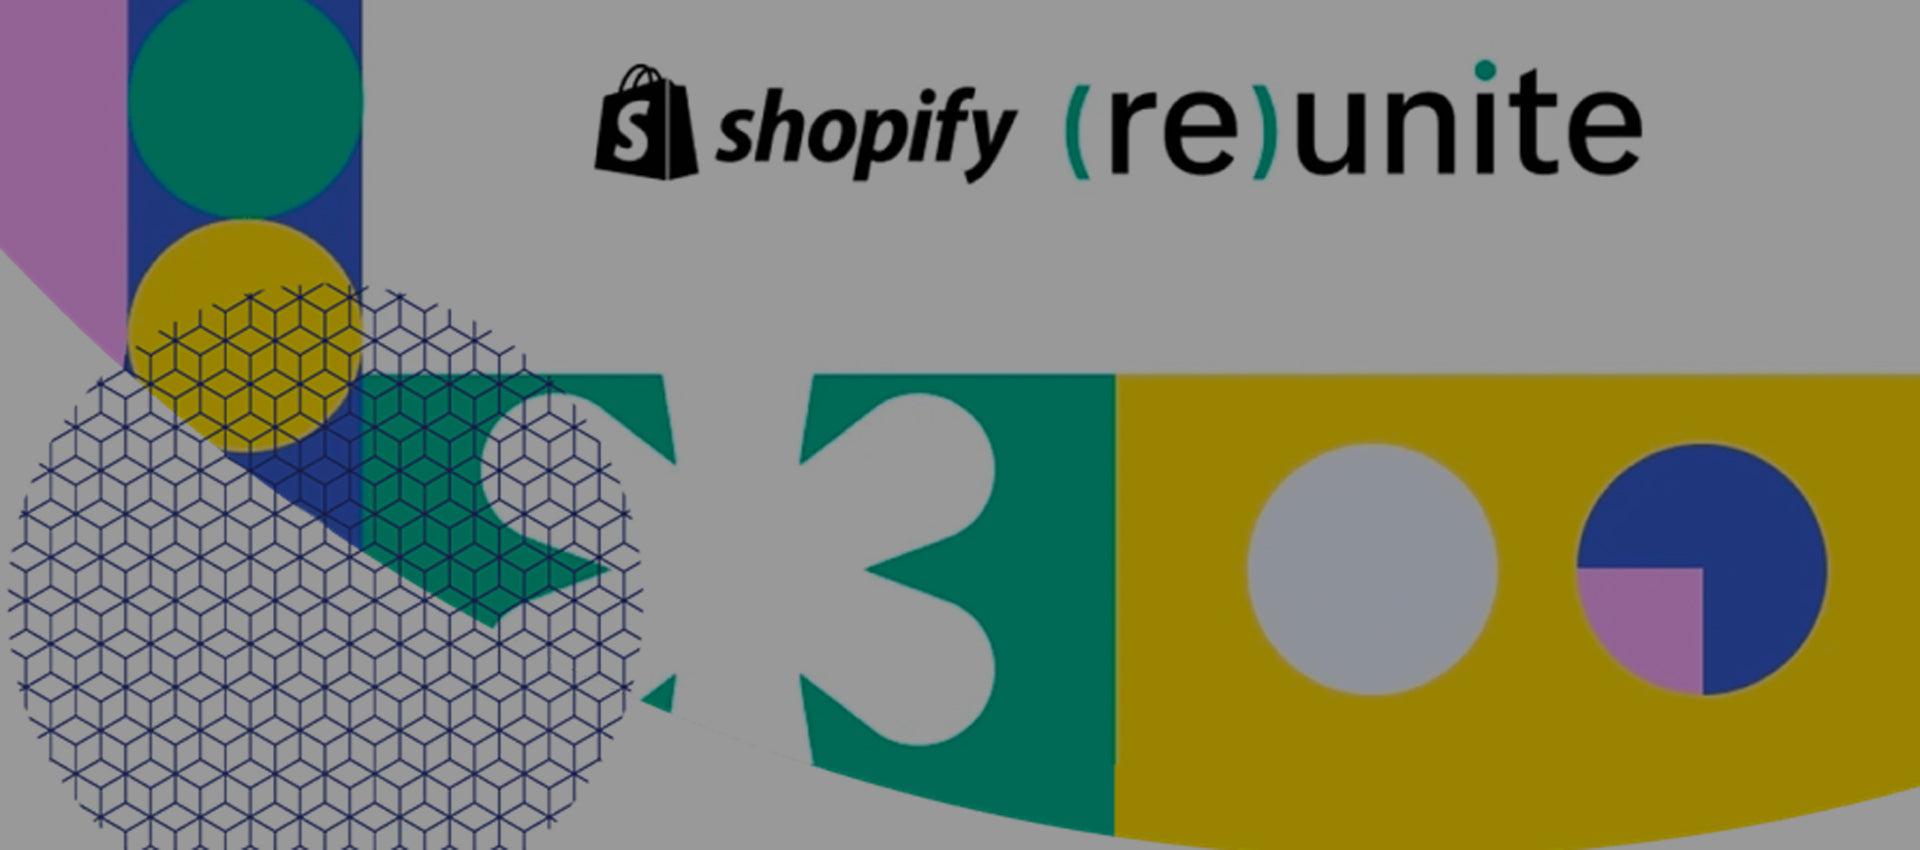 Shopify (re)unite